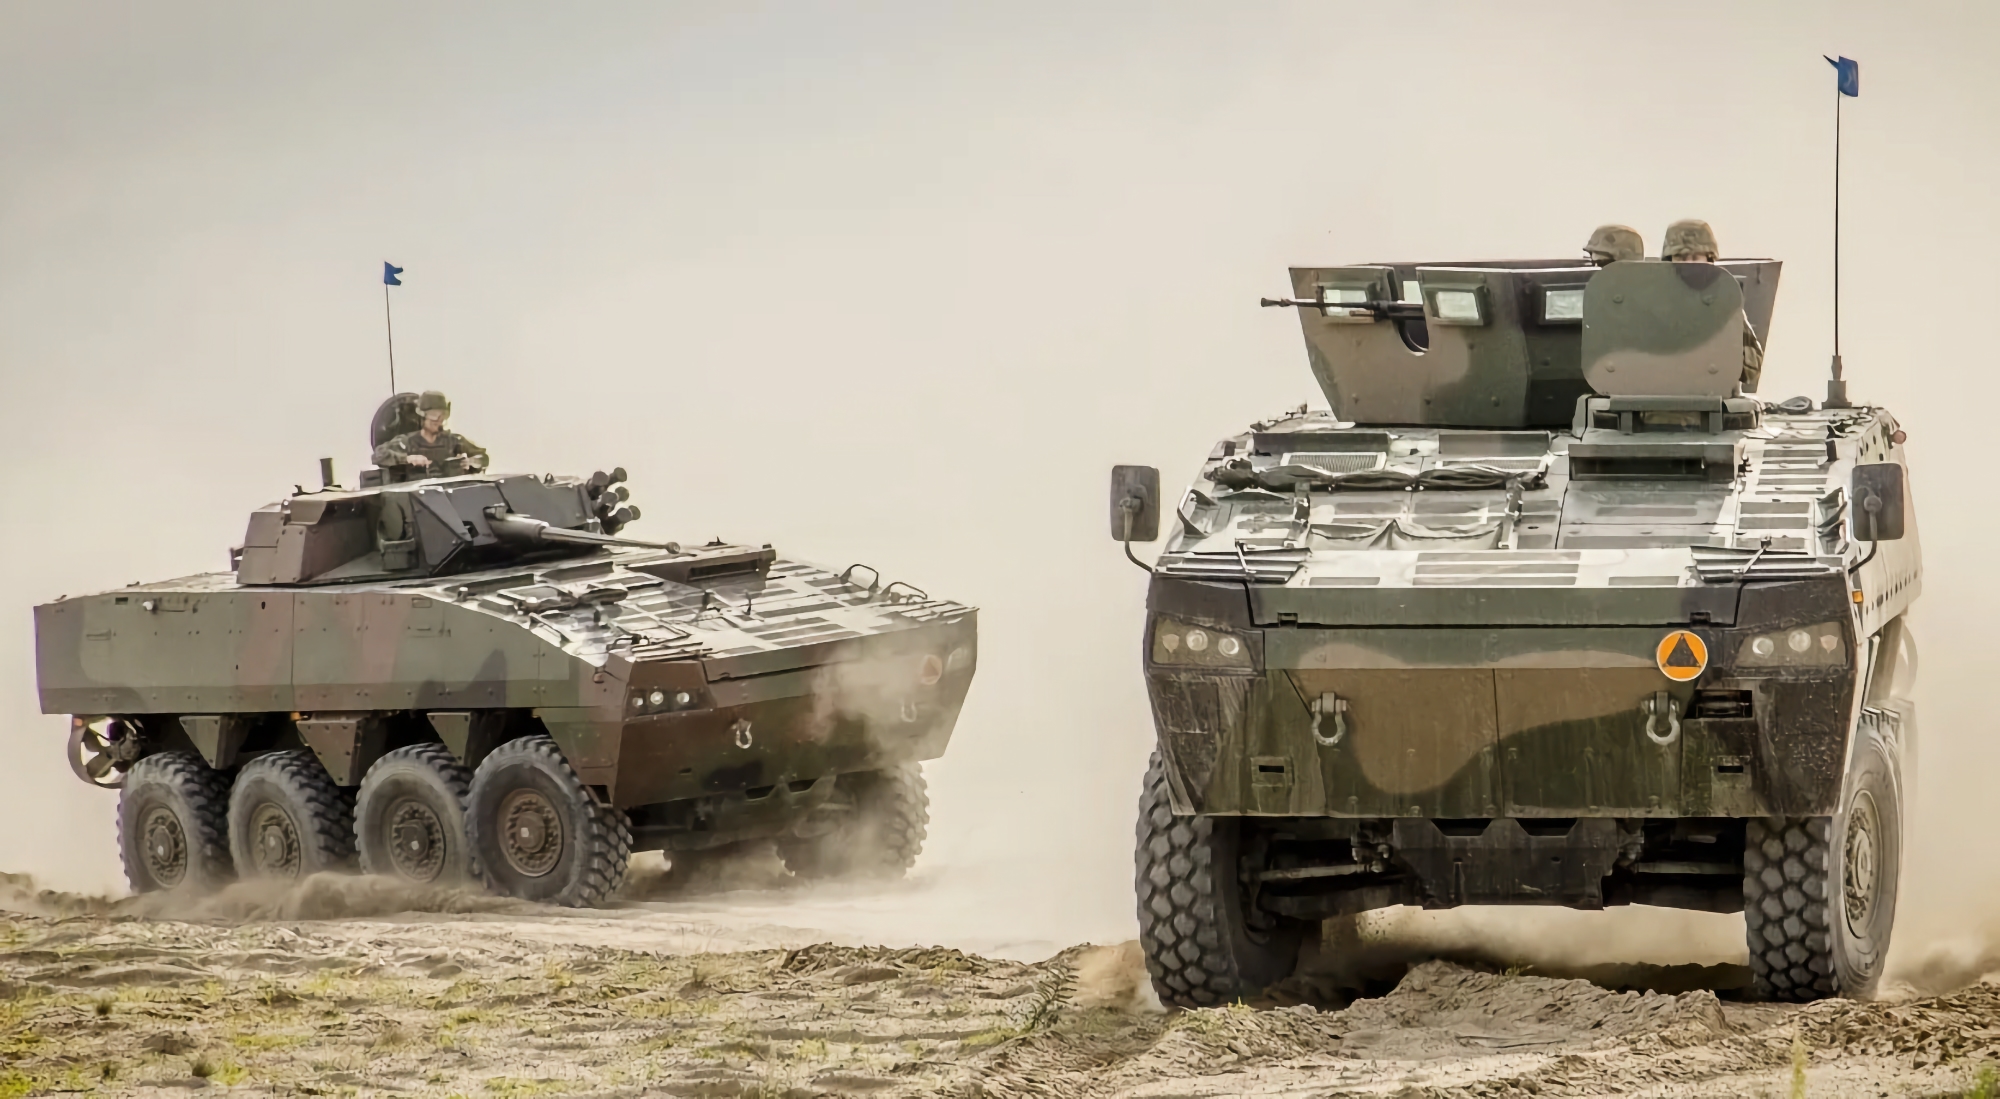 Las AFU ya utilizan vehículos blindados de transporte de tropas polacos Rosomak, que aparecen en el vídeo junto con los tanques Stridsvagn 122 y los BMP CV9040.